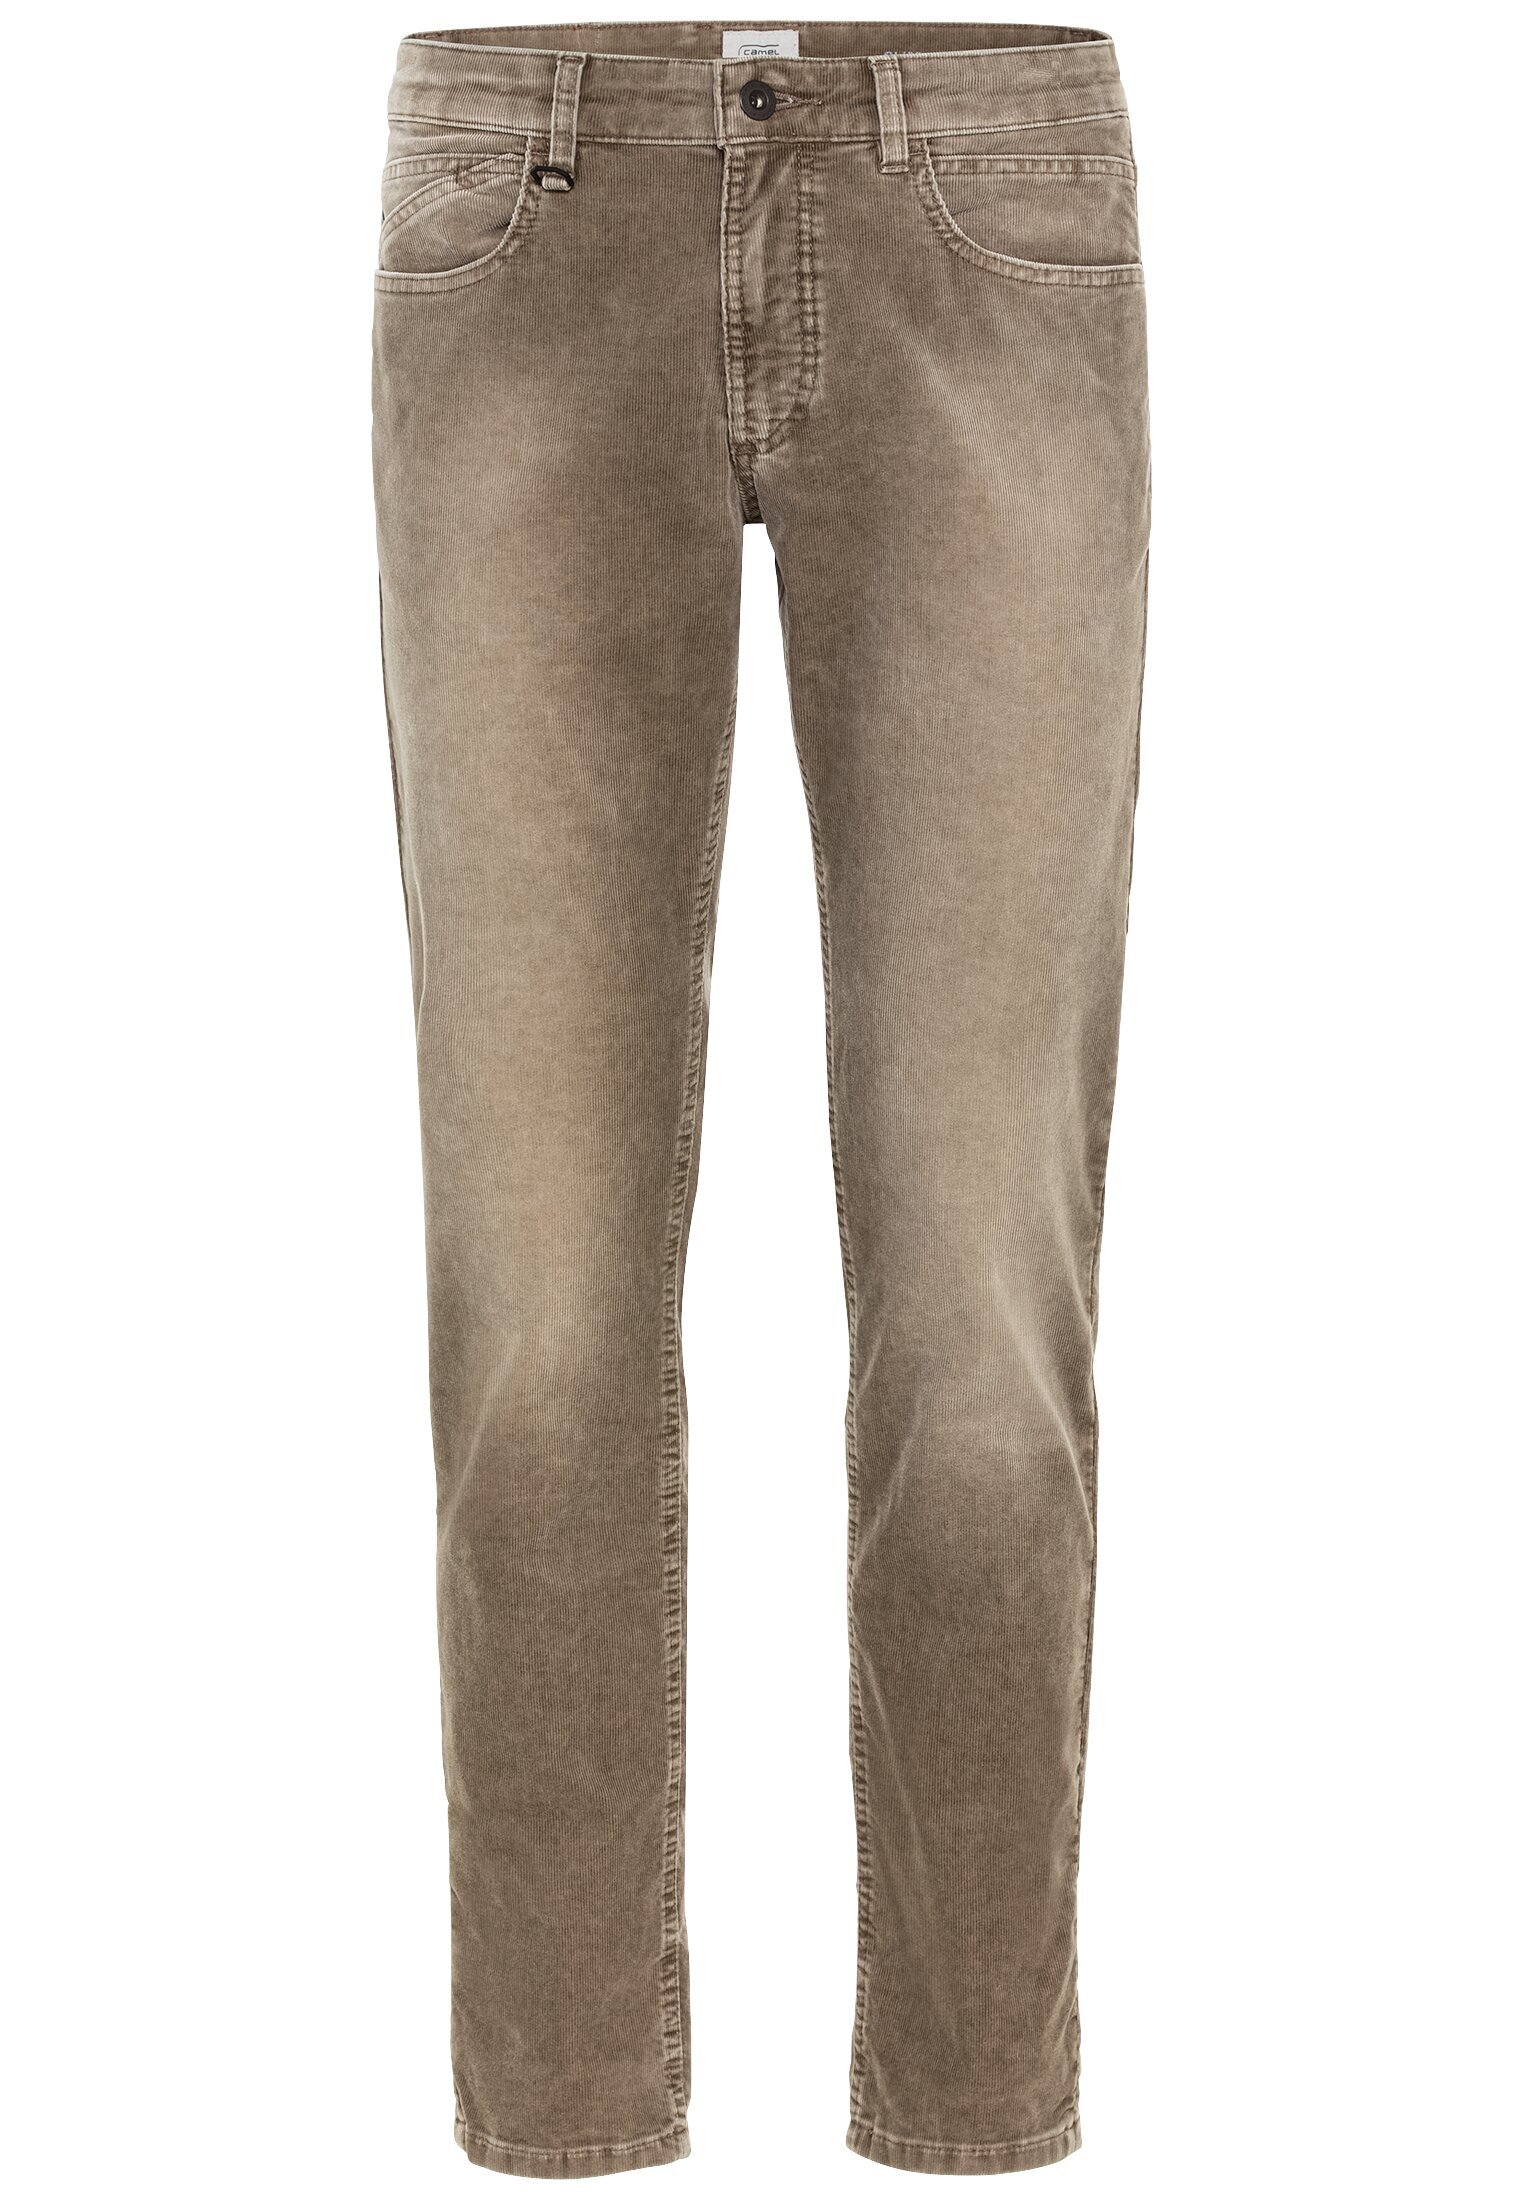 Тканевые брюки Camel Active Slim Fit 5 Pocket Cord, коричневый